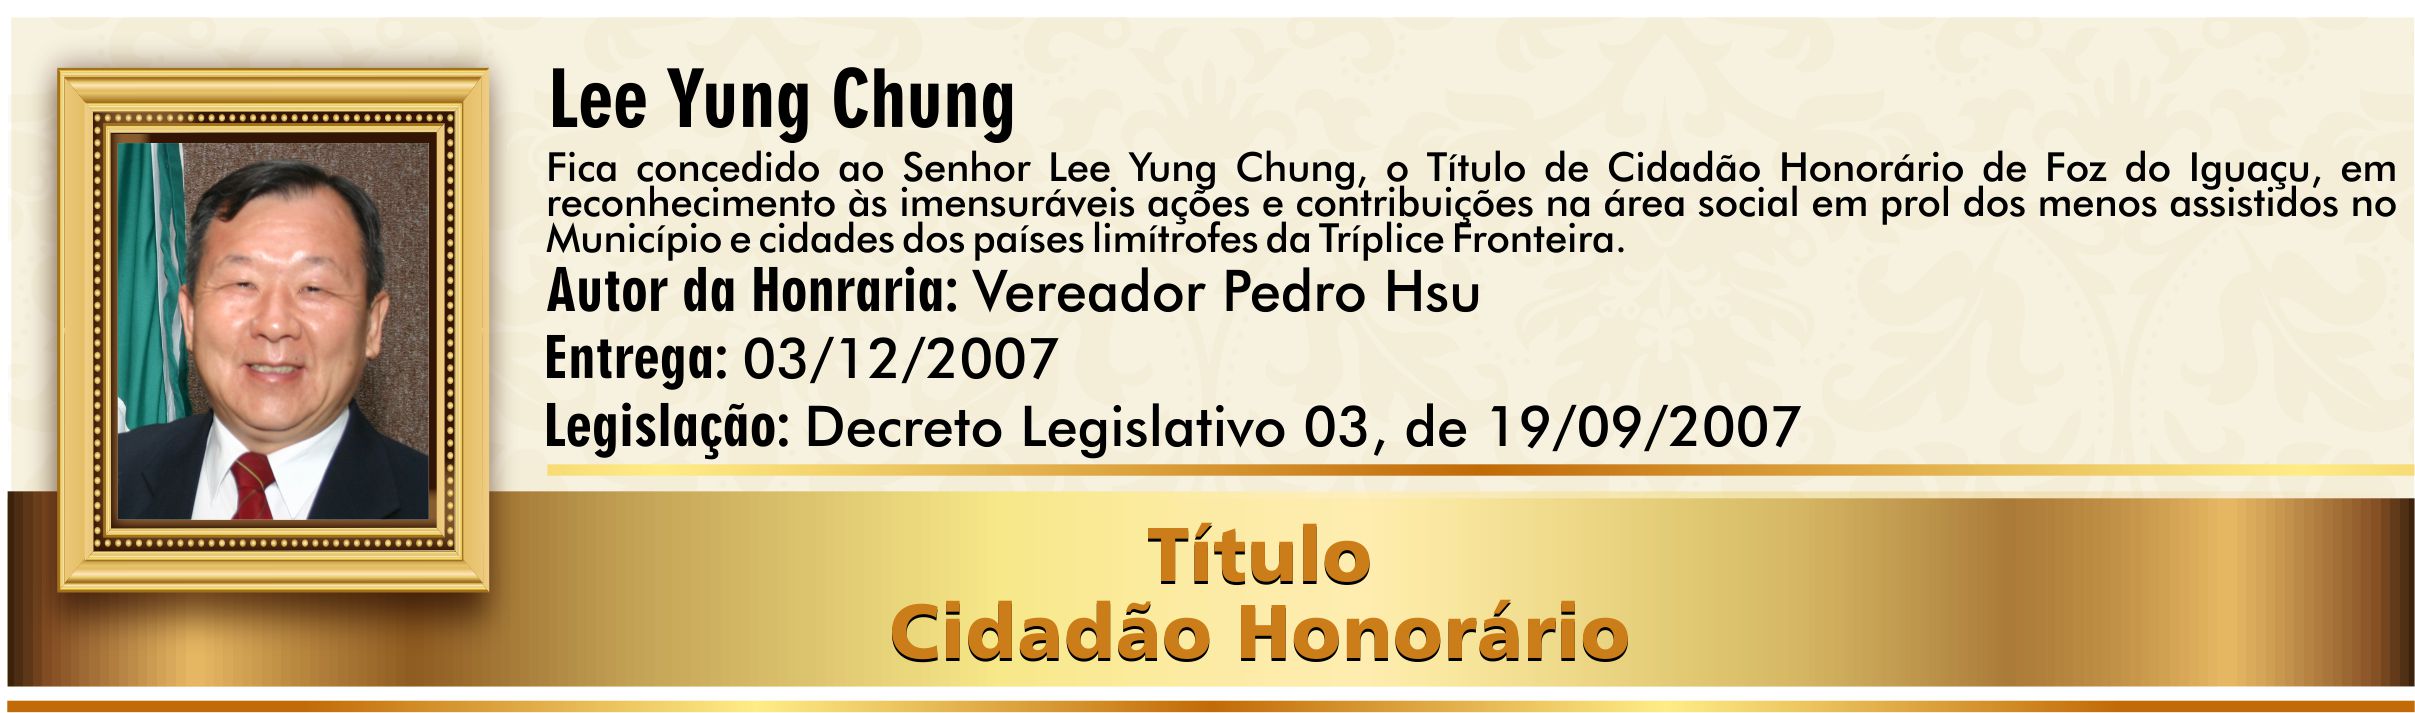 Lee Yung Chung